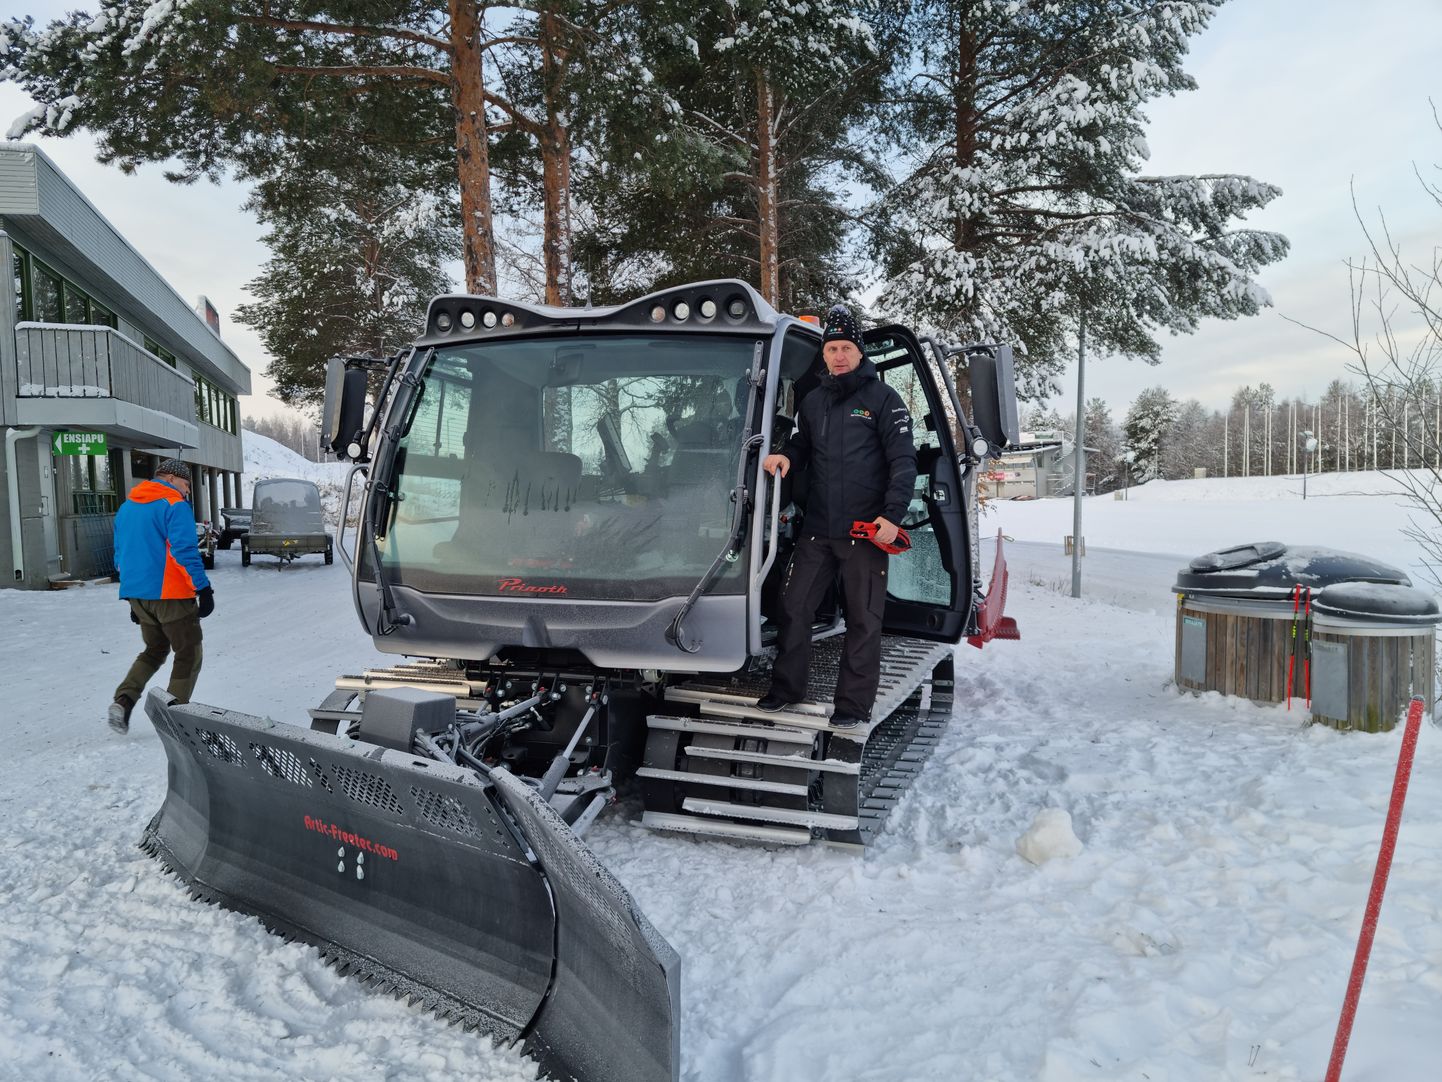 Valgehobusemäe suusa- ja puhkekeskuse esindus käis uue rajatraktoriga tutvumas pea nädalapäevad tagasi Põhja-Soomes. Kauaootatud abiline jõuab Järvamaa keskusesse tööd tegema eeldatavasti paari nädala pärast.